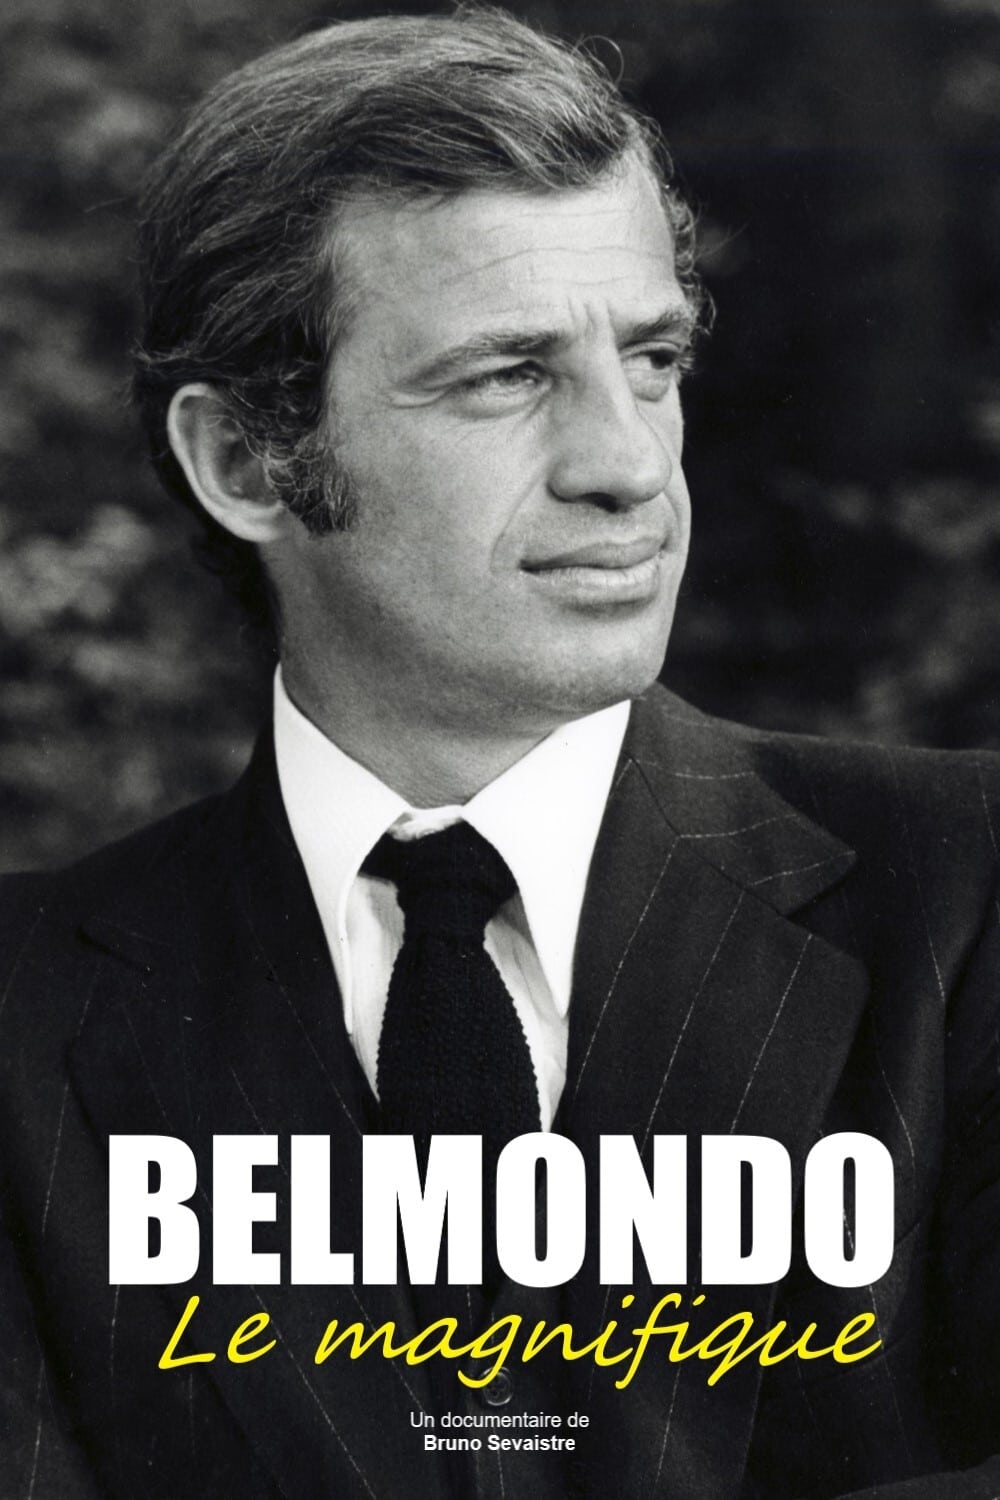 Belmondo, der Unwiderstehliche (2017)